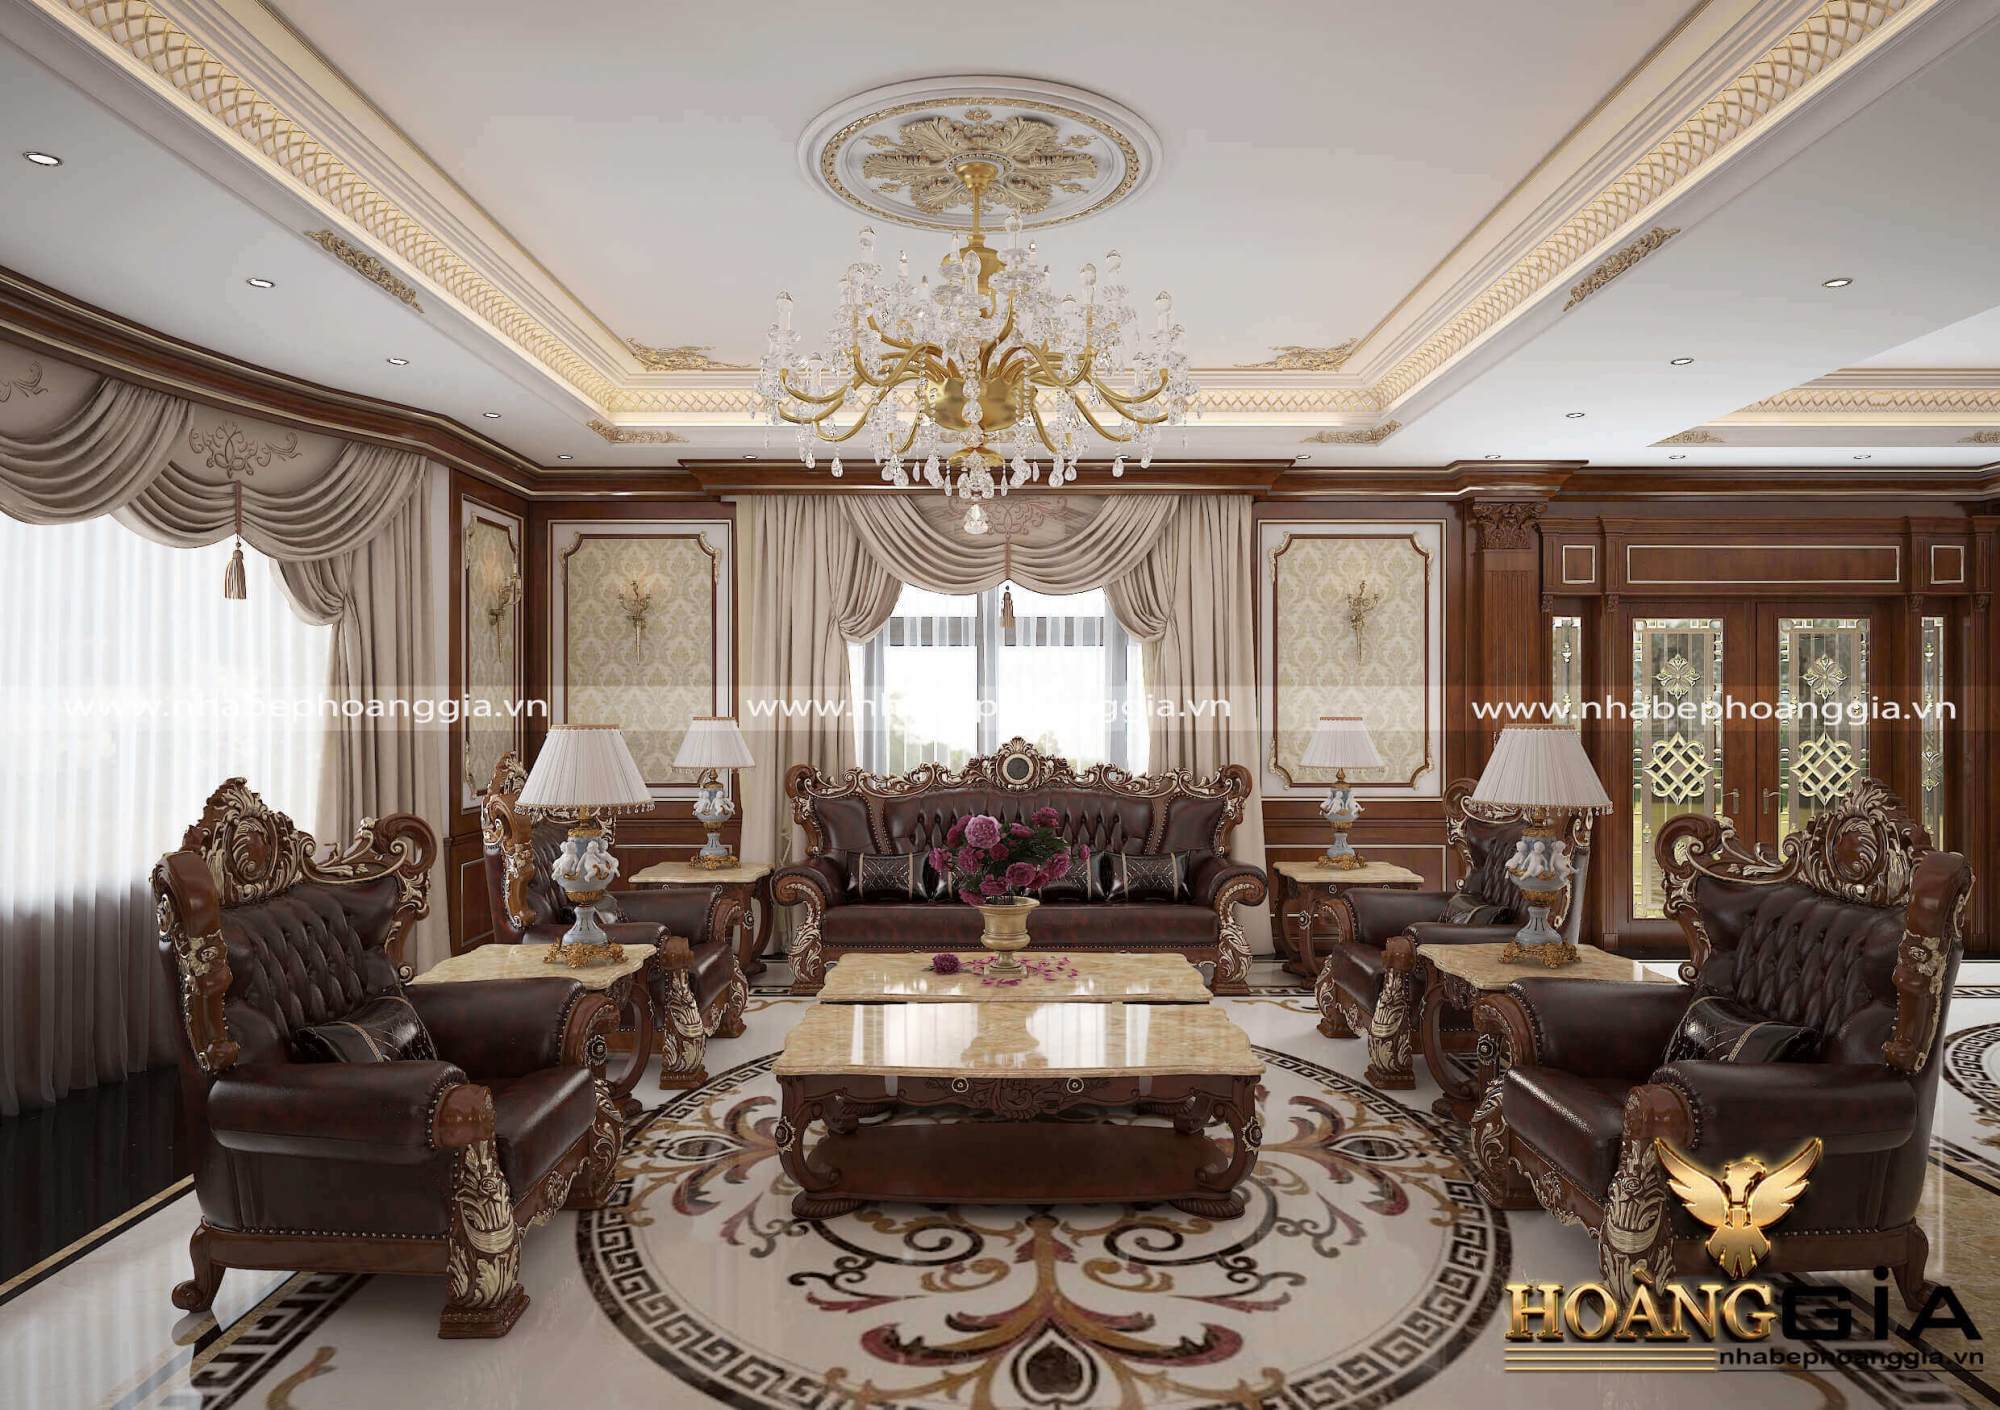 Mẫu sofa tân cổ điển màu nâu cho nhà biệt thự